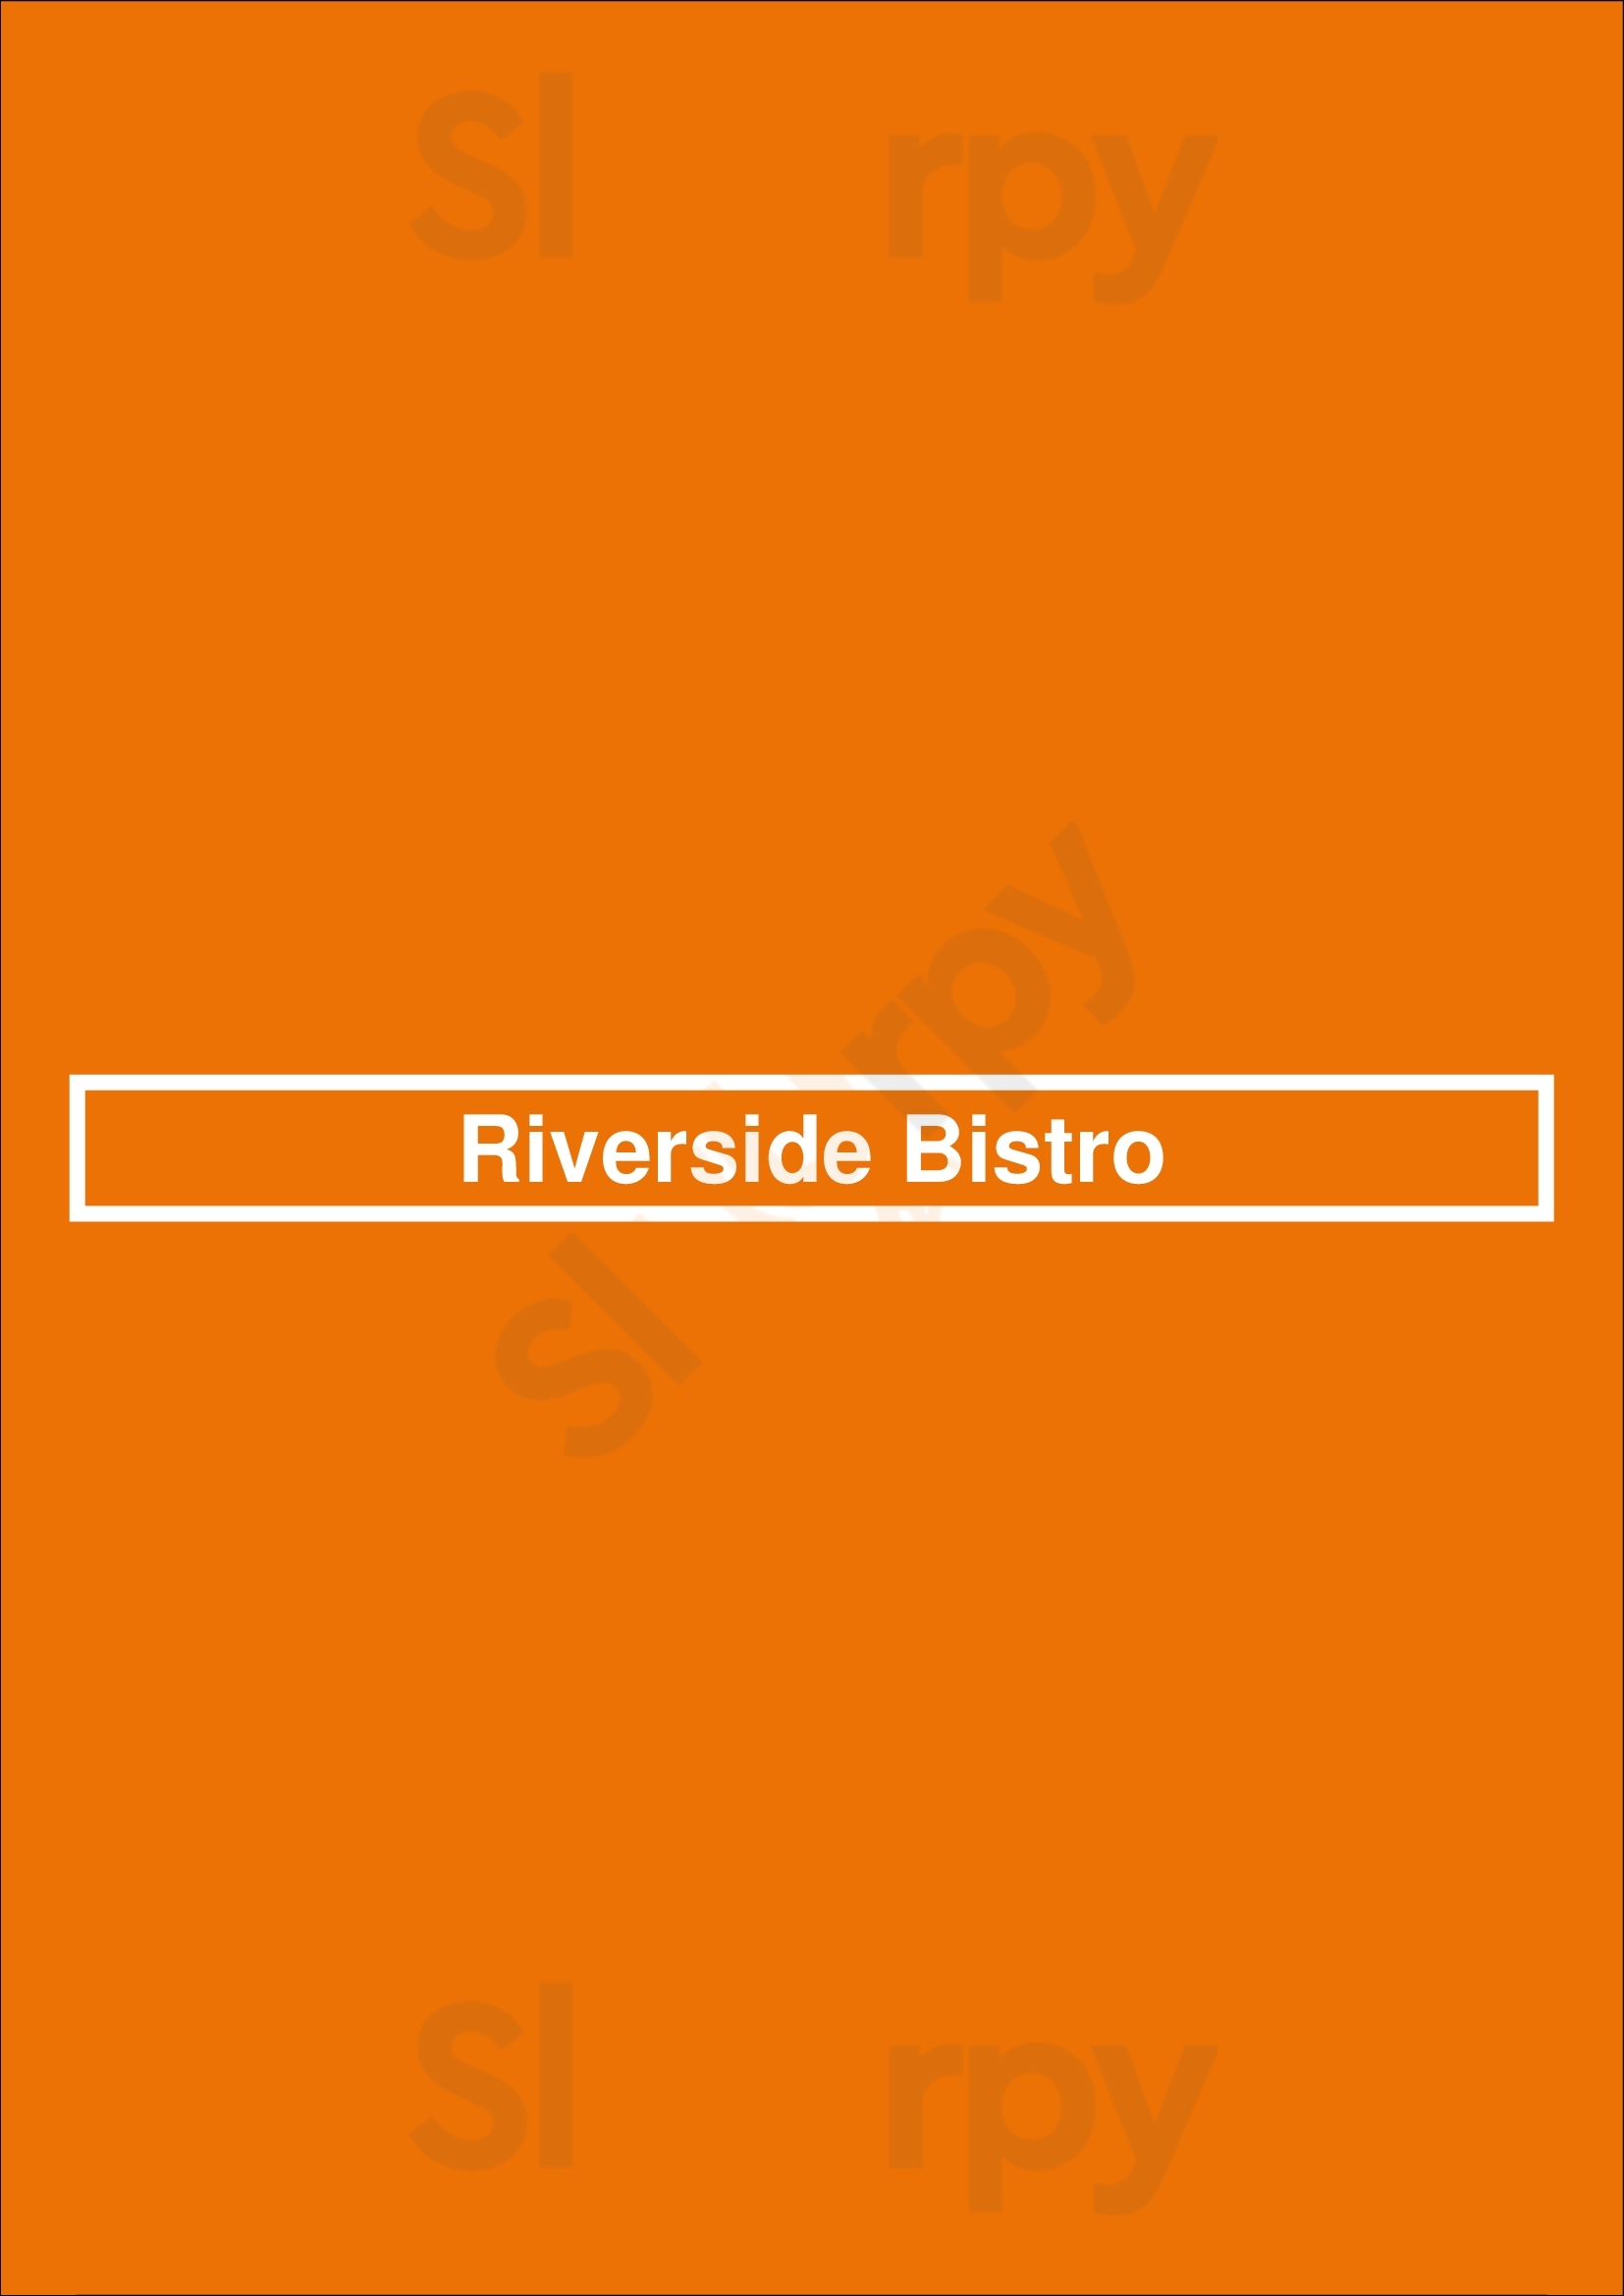 Riverside Bistro Edmonton Menu - 1